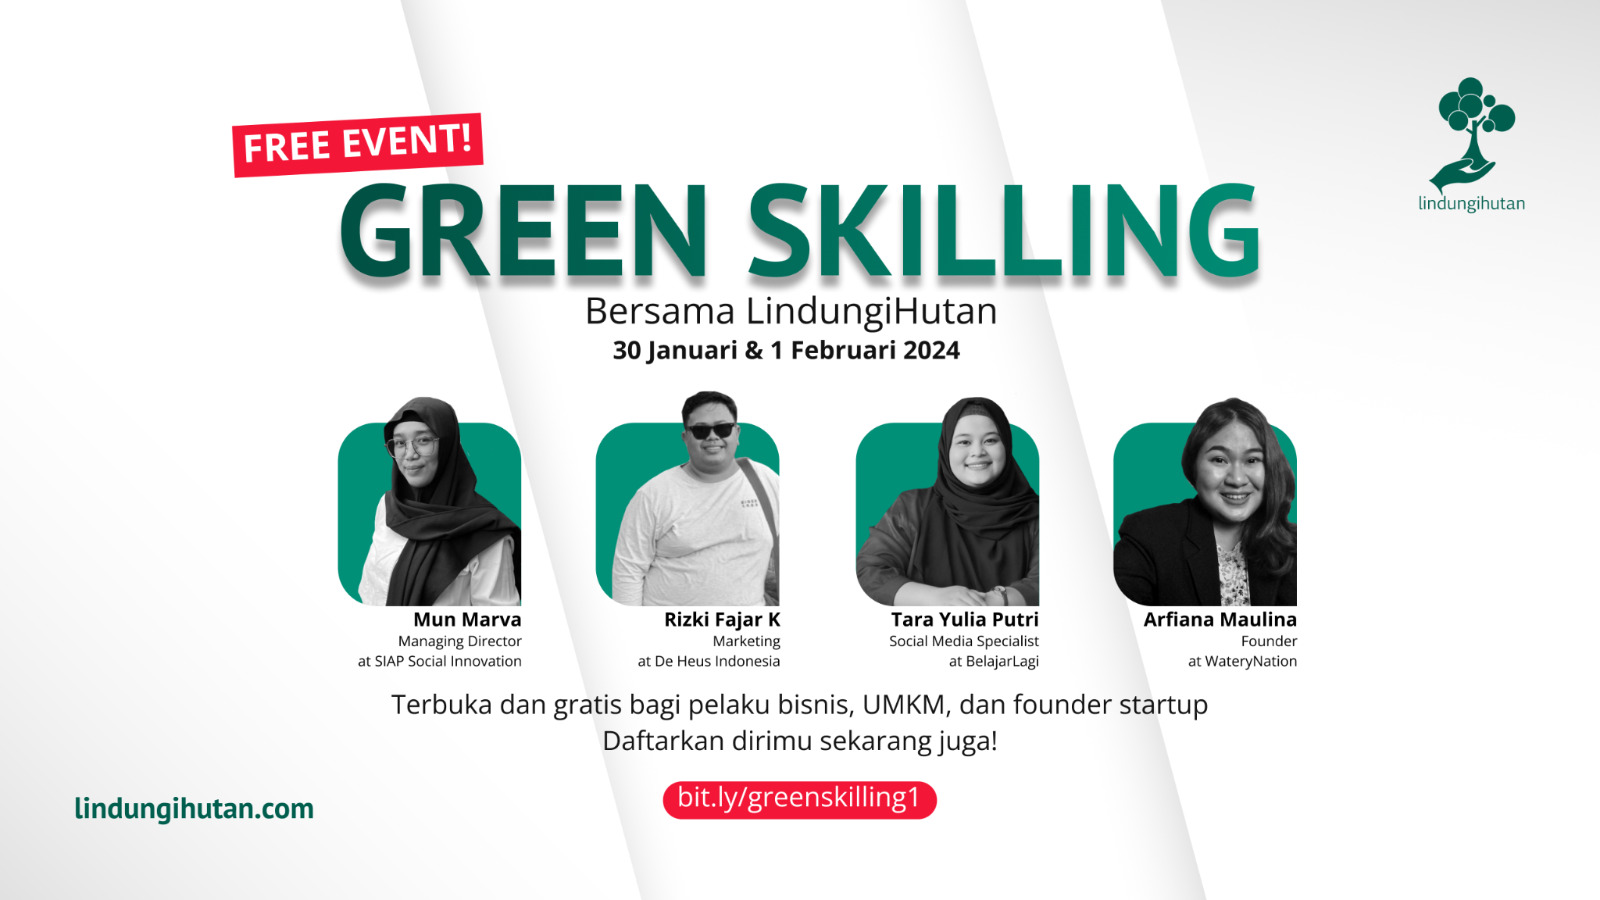 Webinar 'Green Skilling' Gratis oleh LindungiHutan untuk Dukung UMKM dan Startup, Simak Waktunya